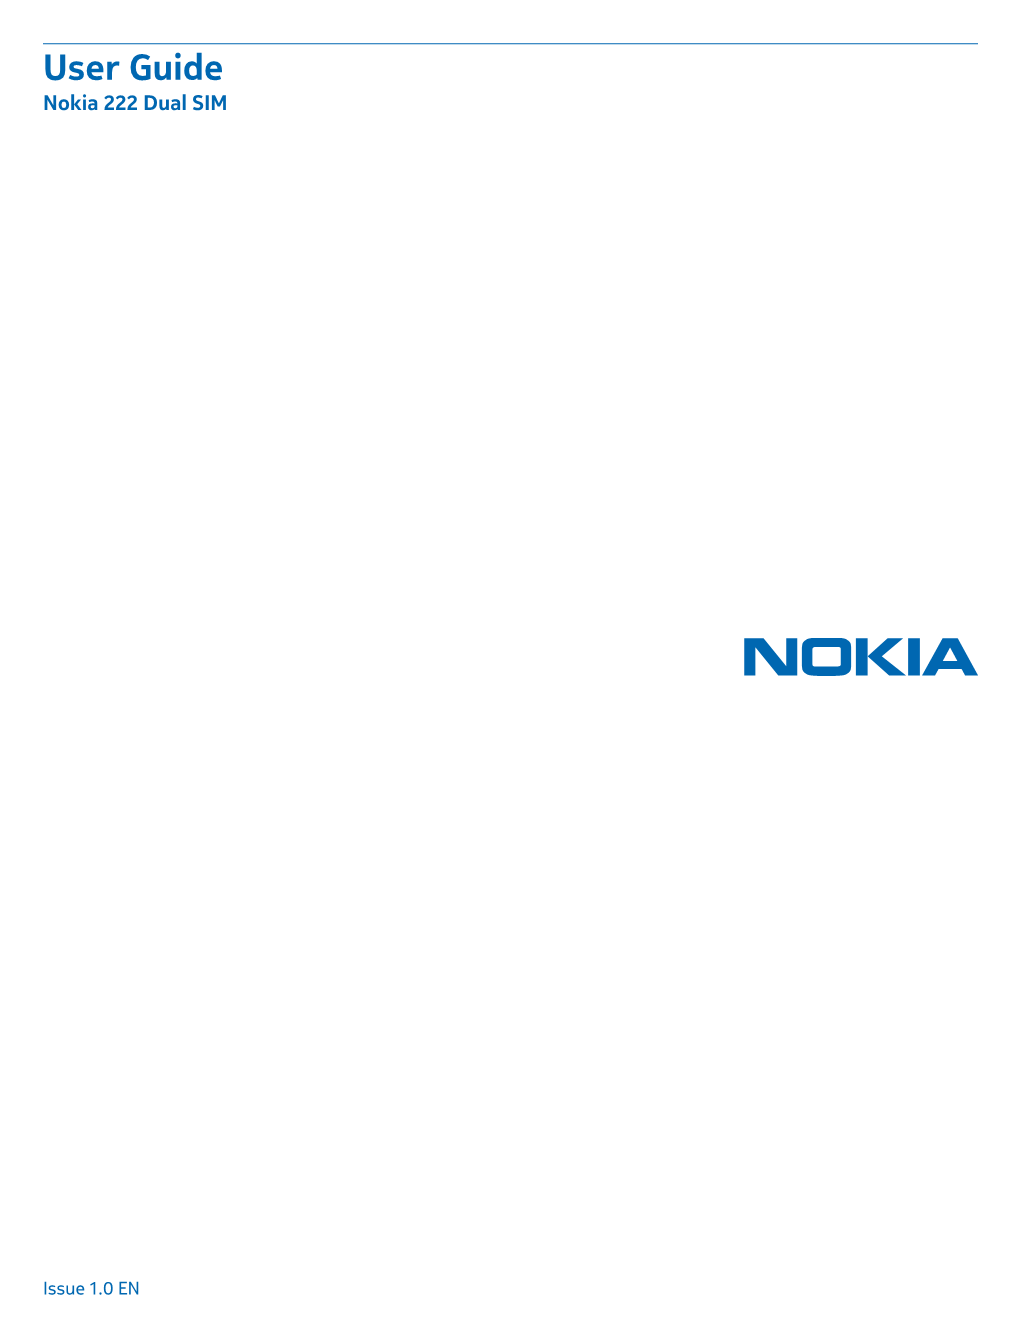 Nokia 222 Dual SIM User Guide